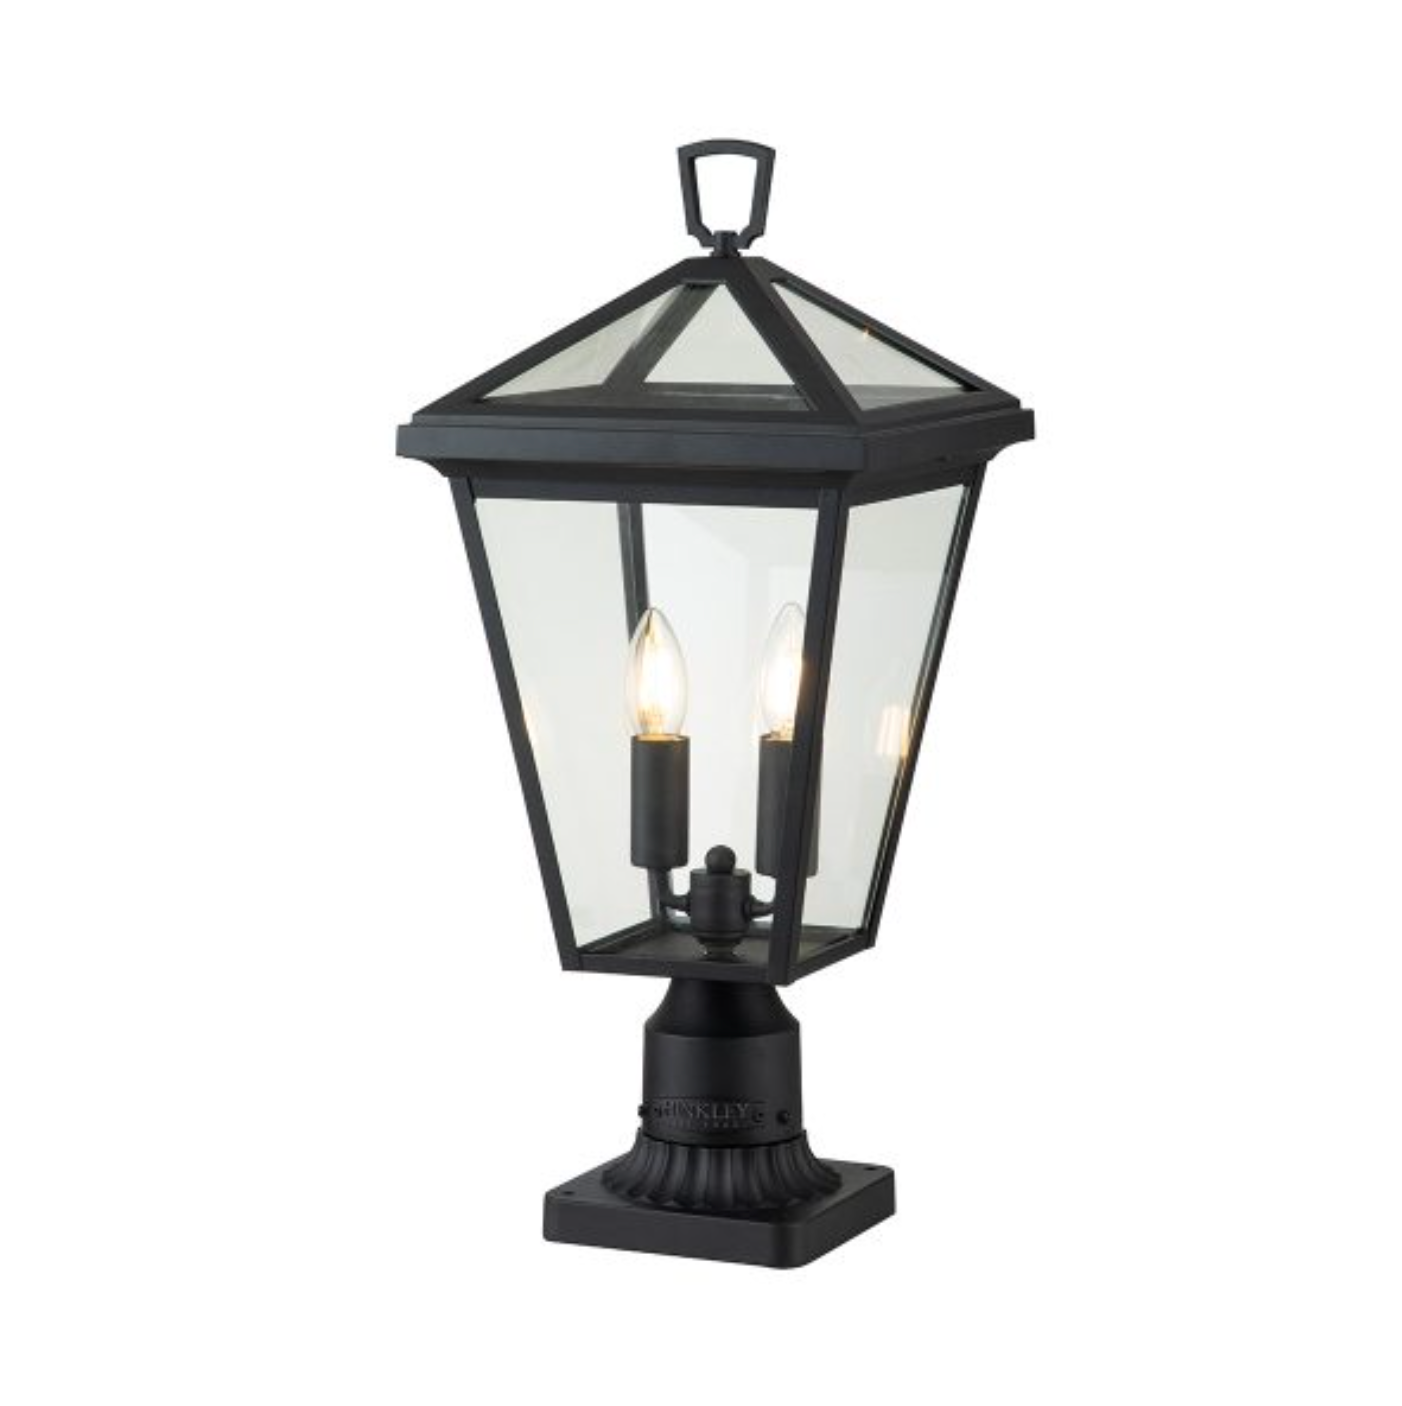 Outdoor Pedestal Lantern, Black - ID 12373